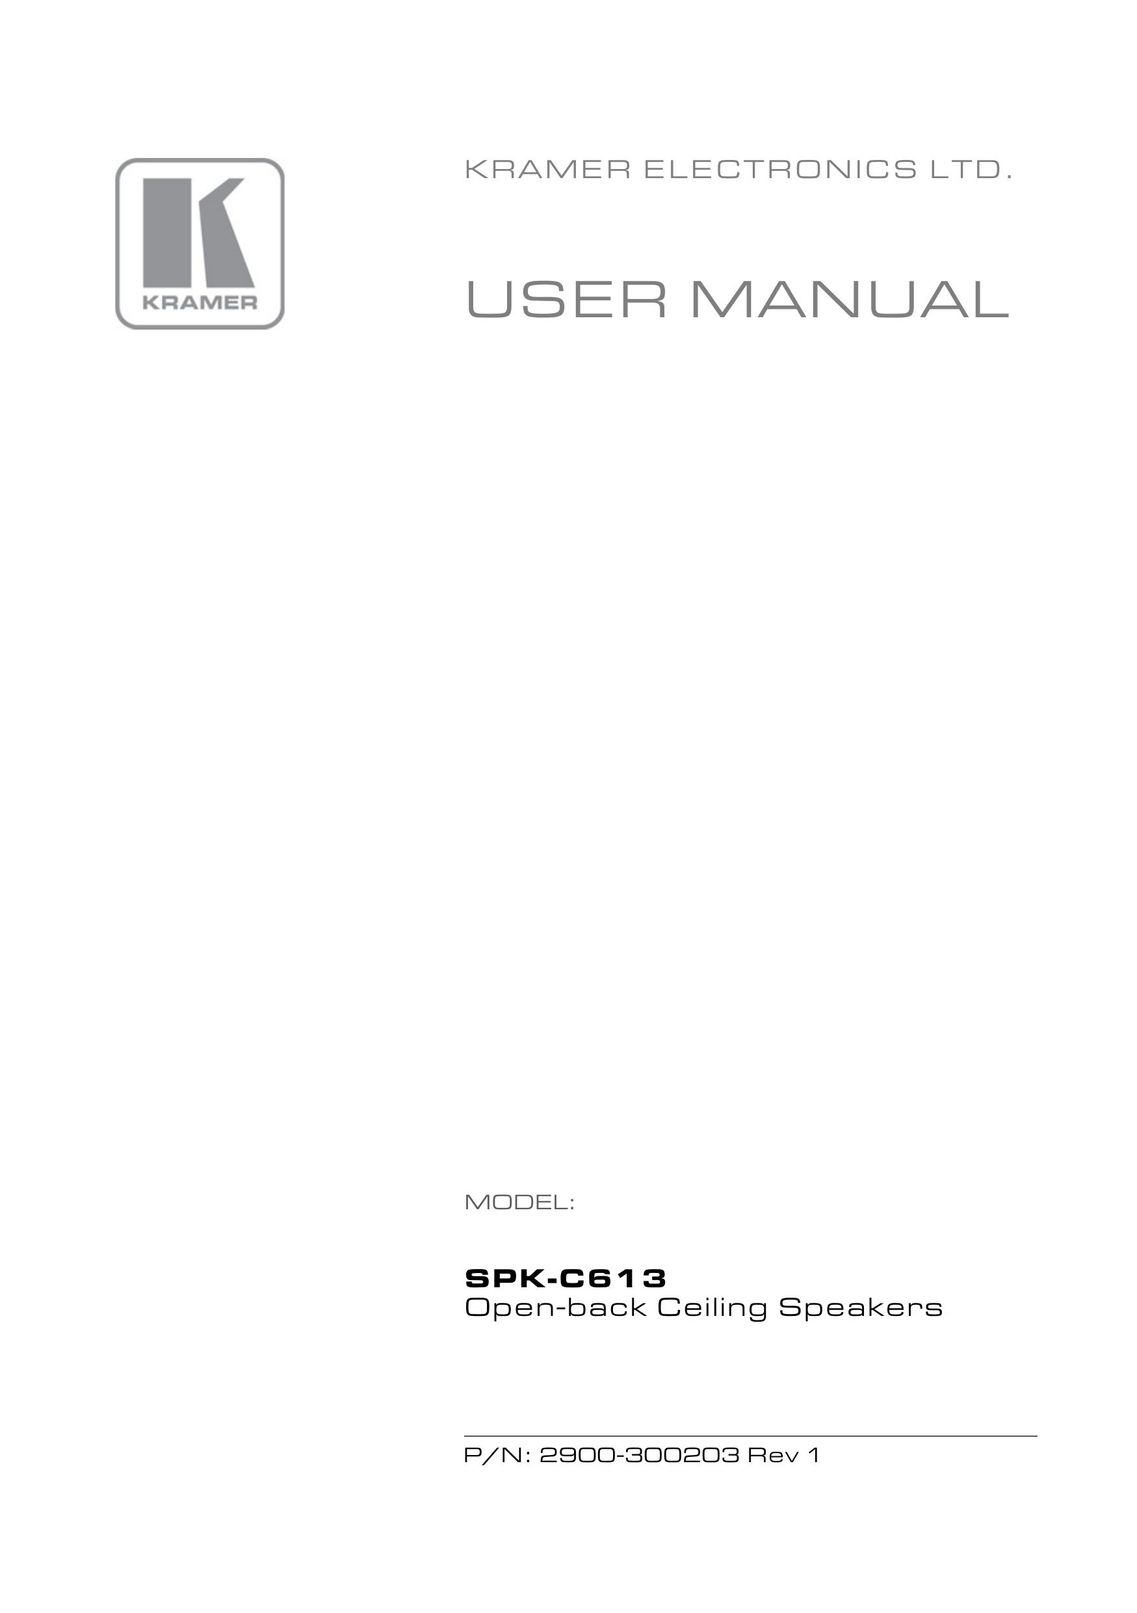 Kramer Electronics SPK-C613 Speaker User Manual